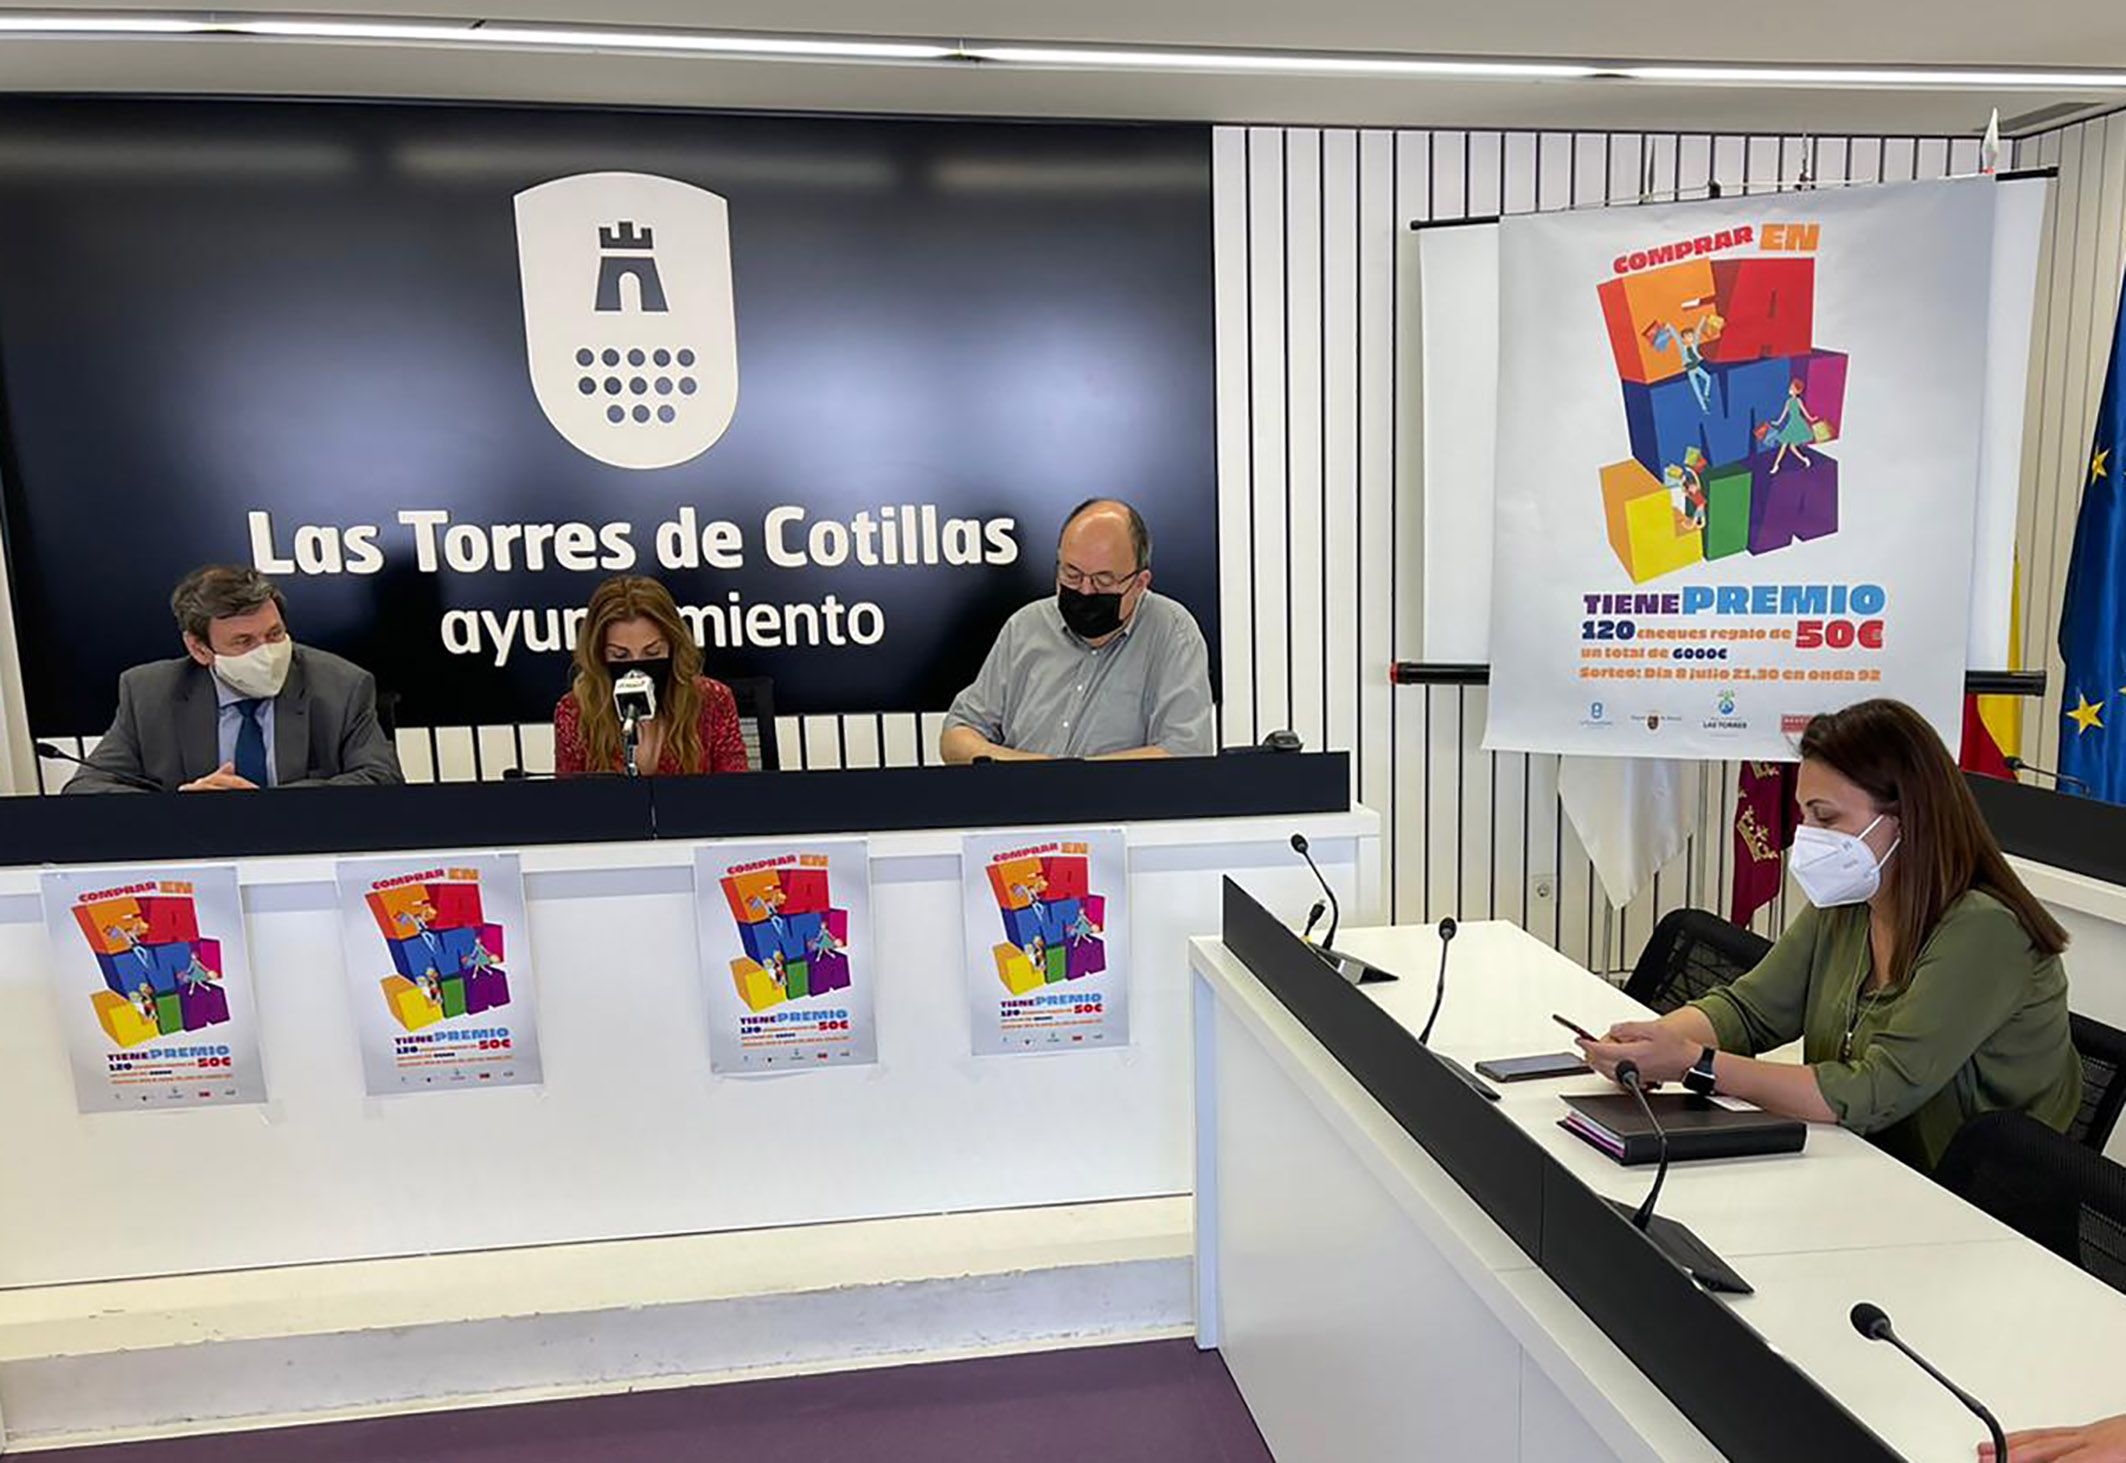 Comprar en familia” en Las Torres de Cotillas tiene 6.000 euros de premio2